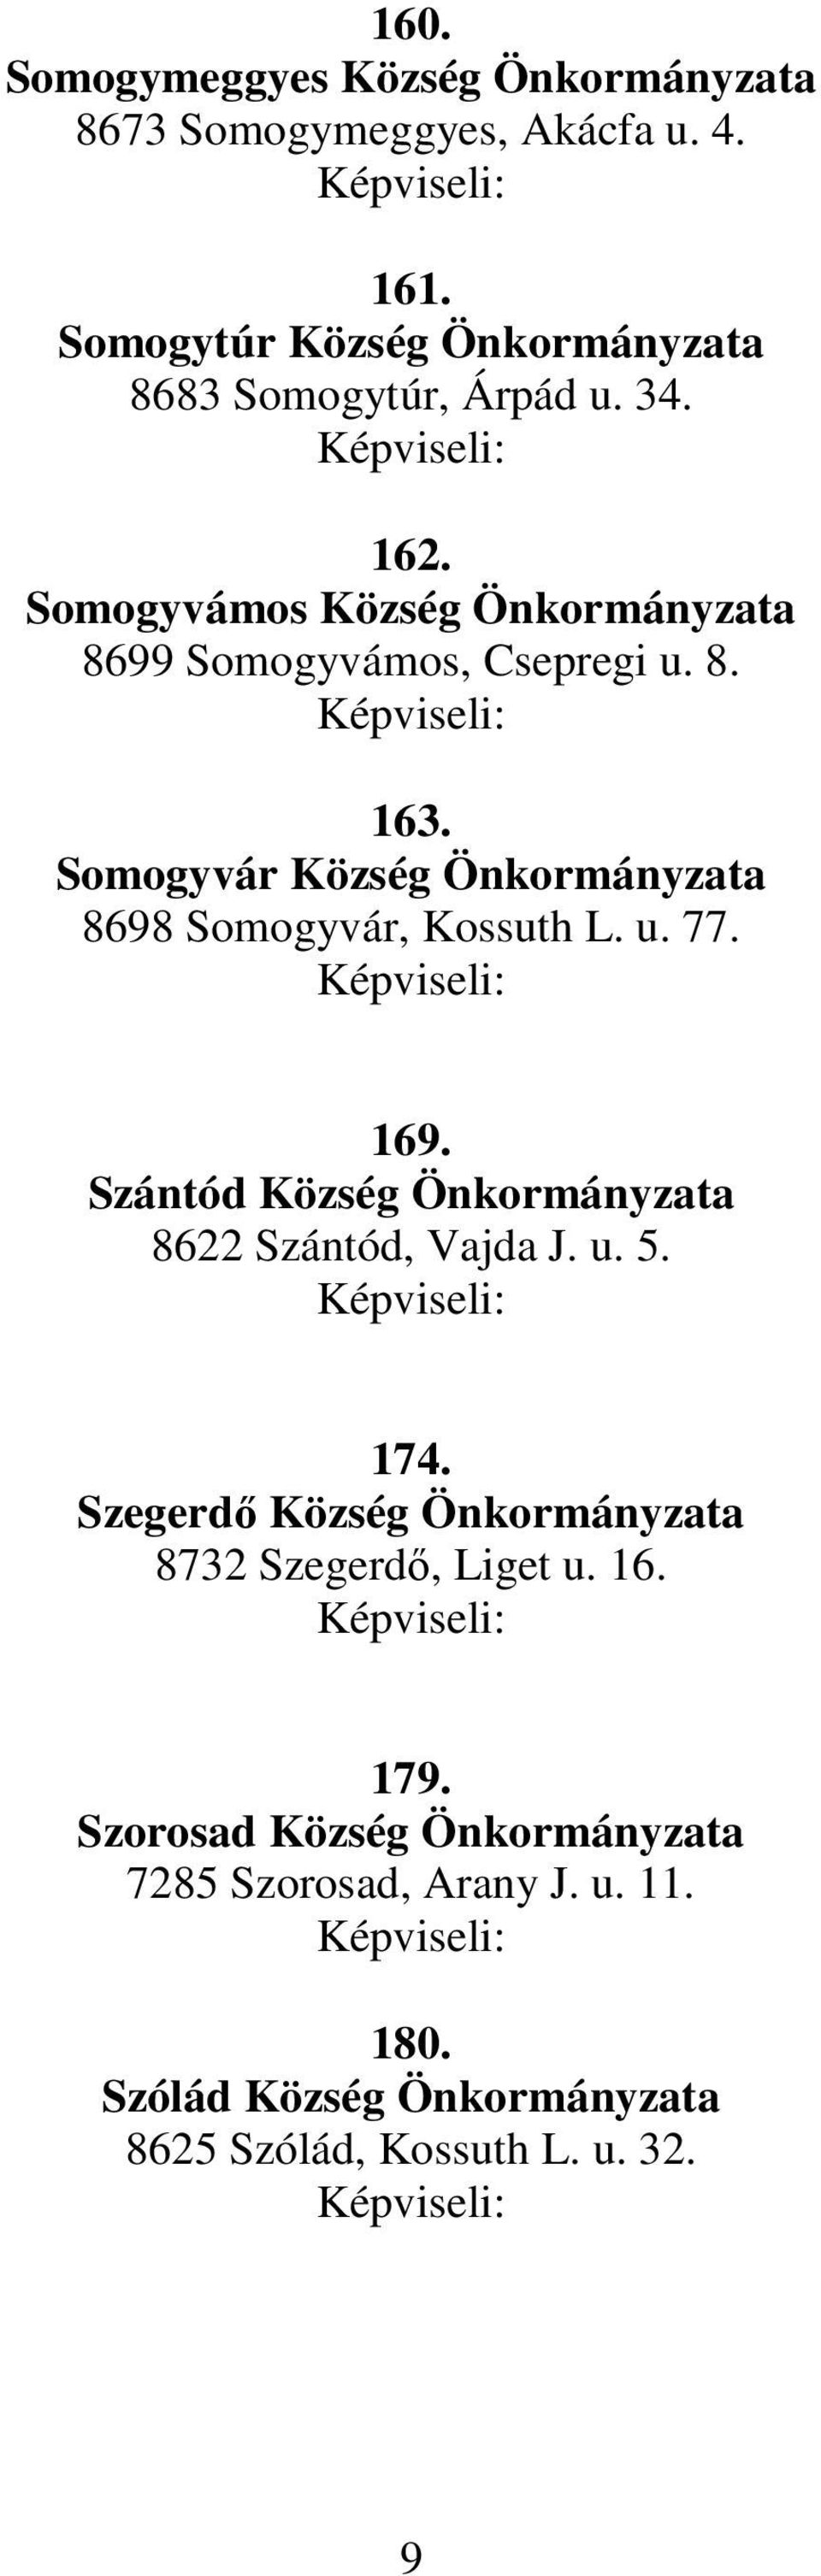 Somogyvár Község Önkormányzata 8698 Somogyvár, Kossuth L. u. 77. 169. Szántód Község Önkormányzata 8622 Szántód, Vajda J. u. 5. 174.